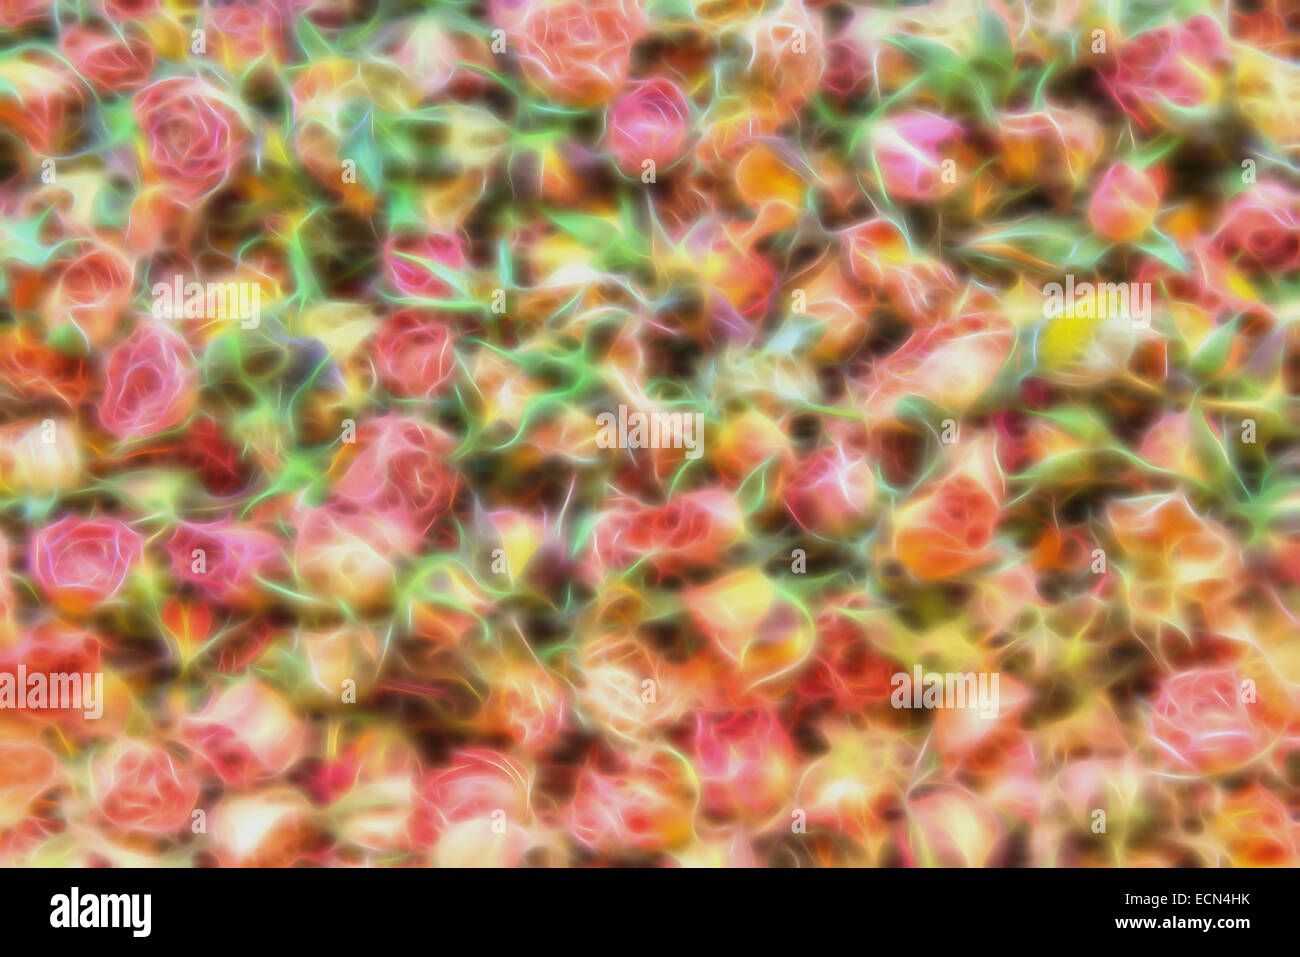 Pastel suave de fondo a partir de una imagen base de pequeñas rosas secas Foto de stock